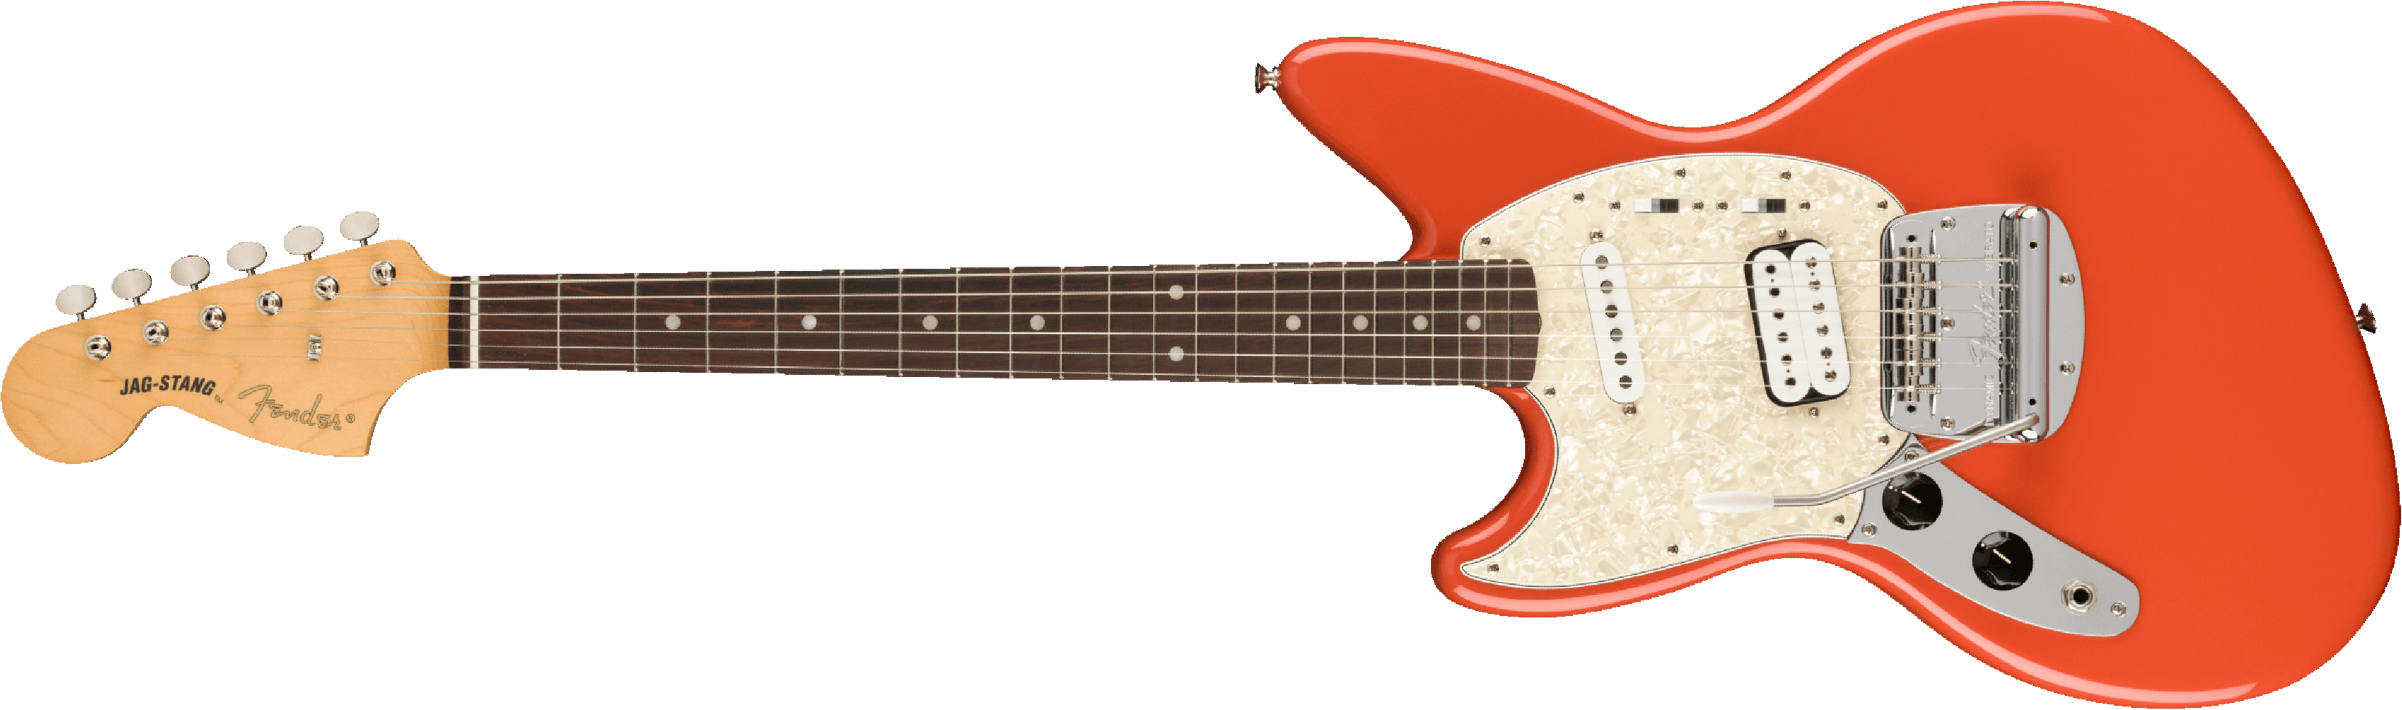 Fender Jag-stang Kurt Cobain Artist Gaucher Hs Trem Rw - Fiesta Red - Guitare Électrique Gaucher - Main picture